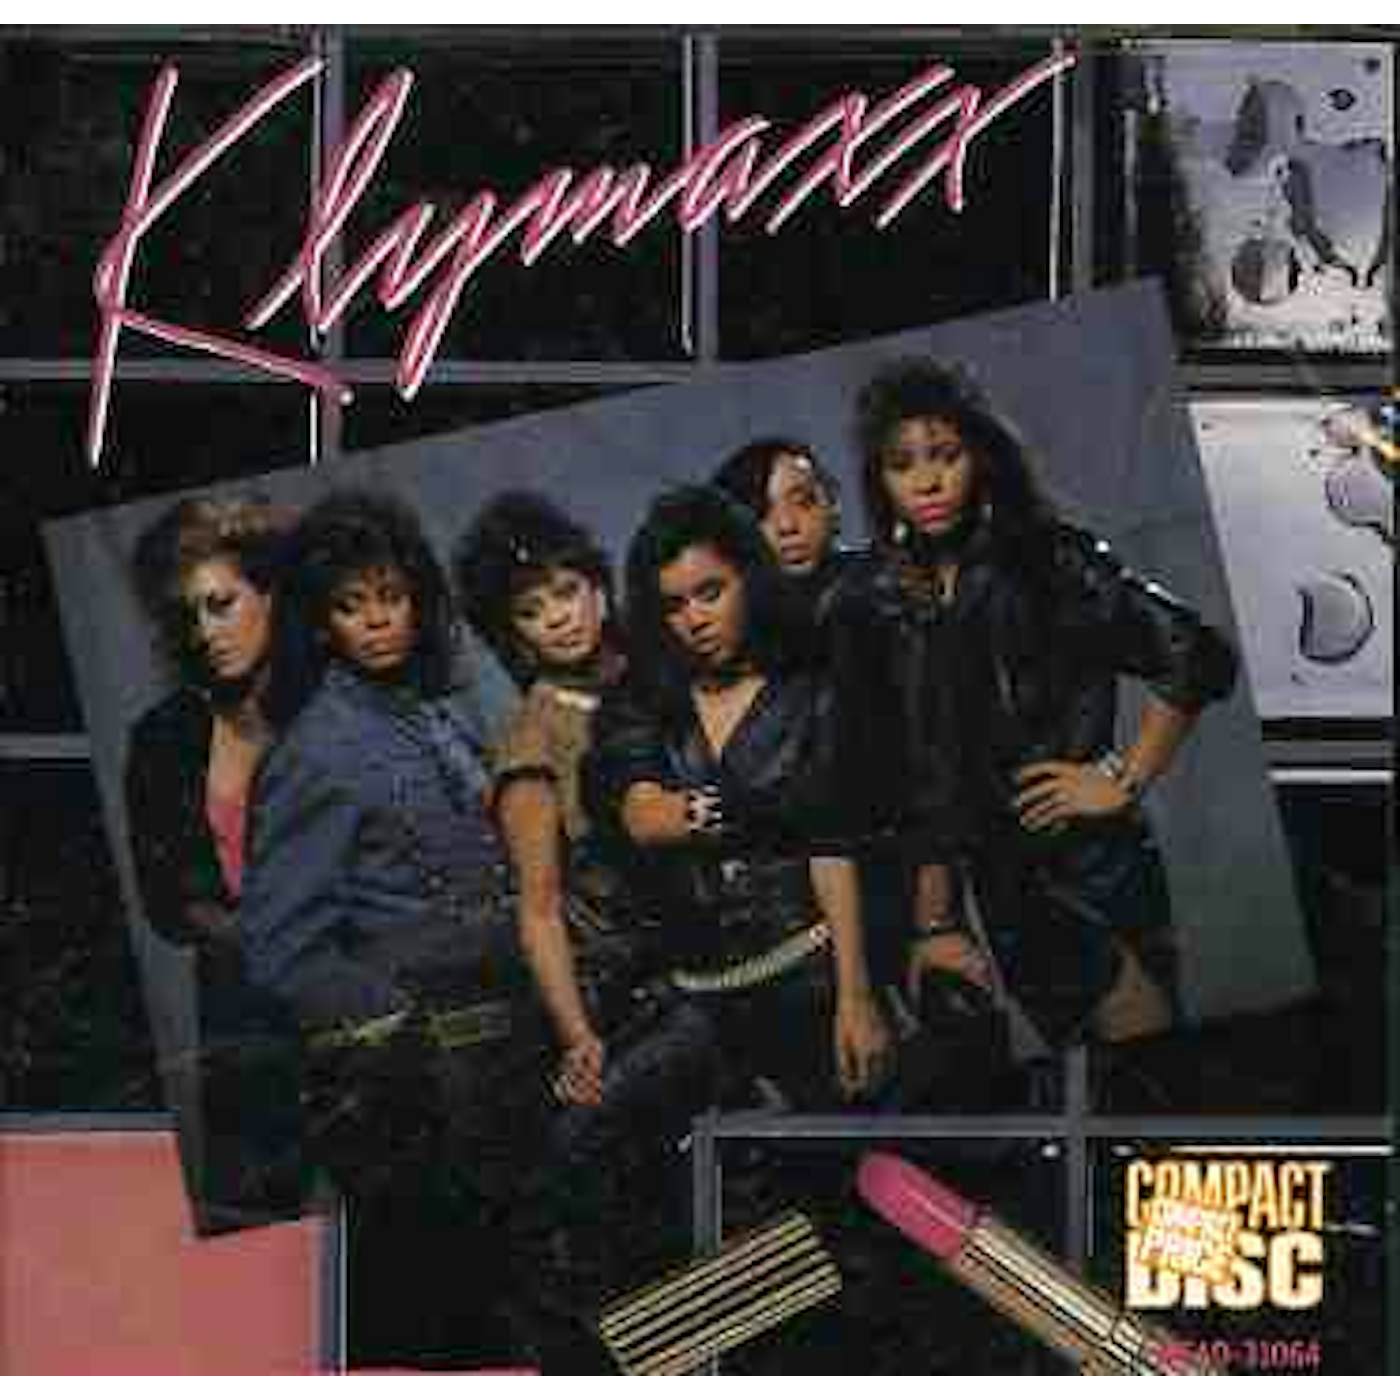 Klymaxx MEETING IN THE LADIES ROOM CD